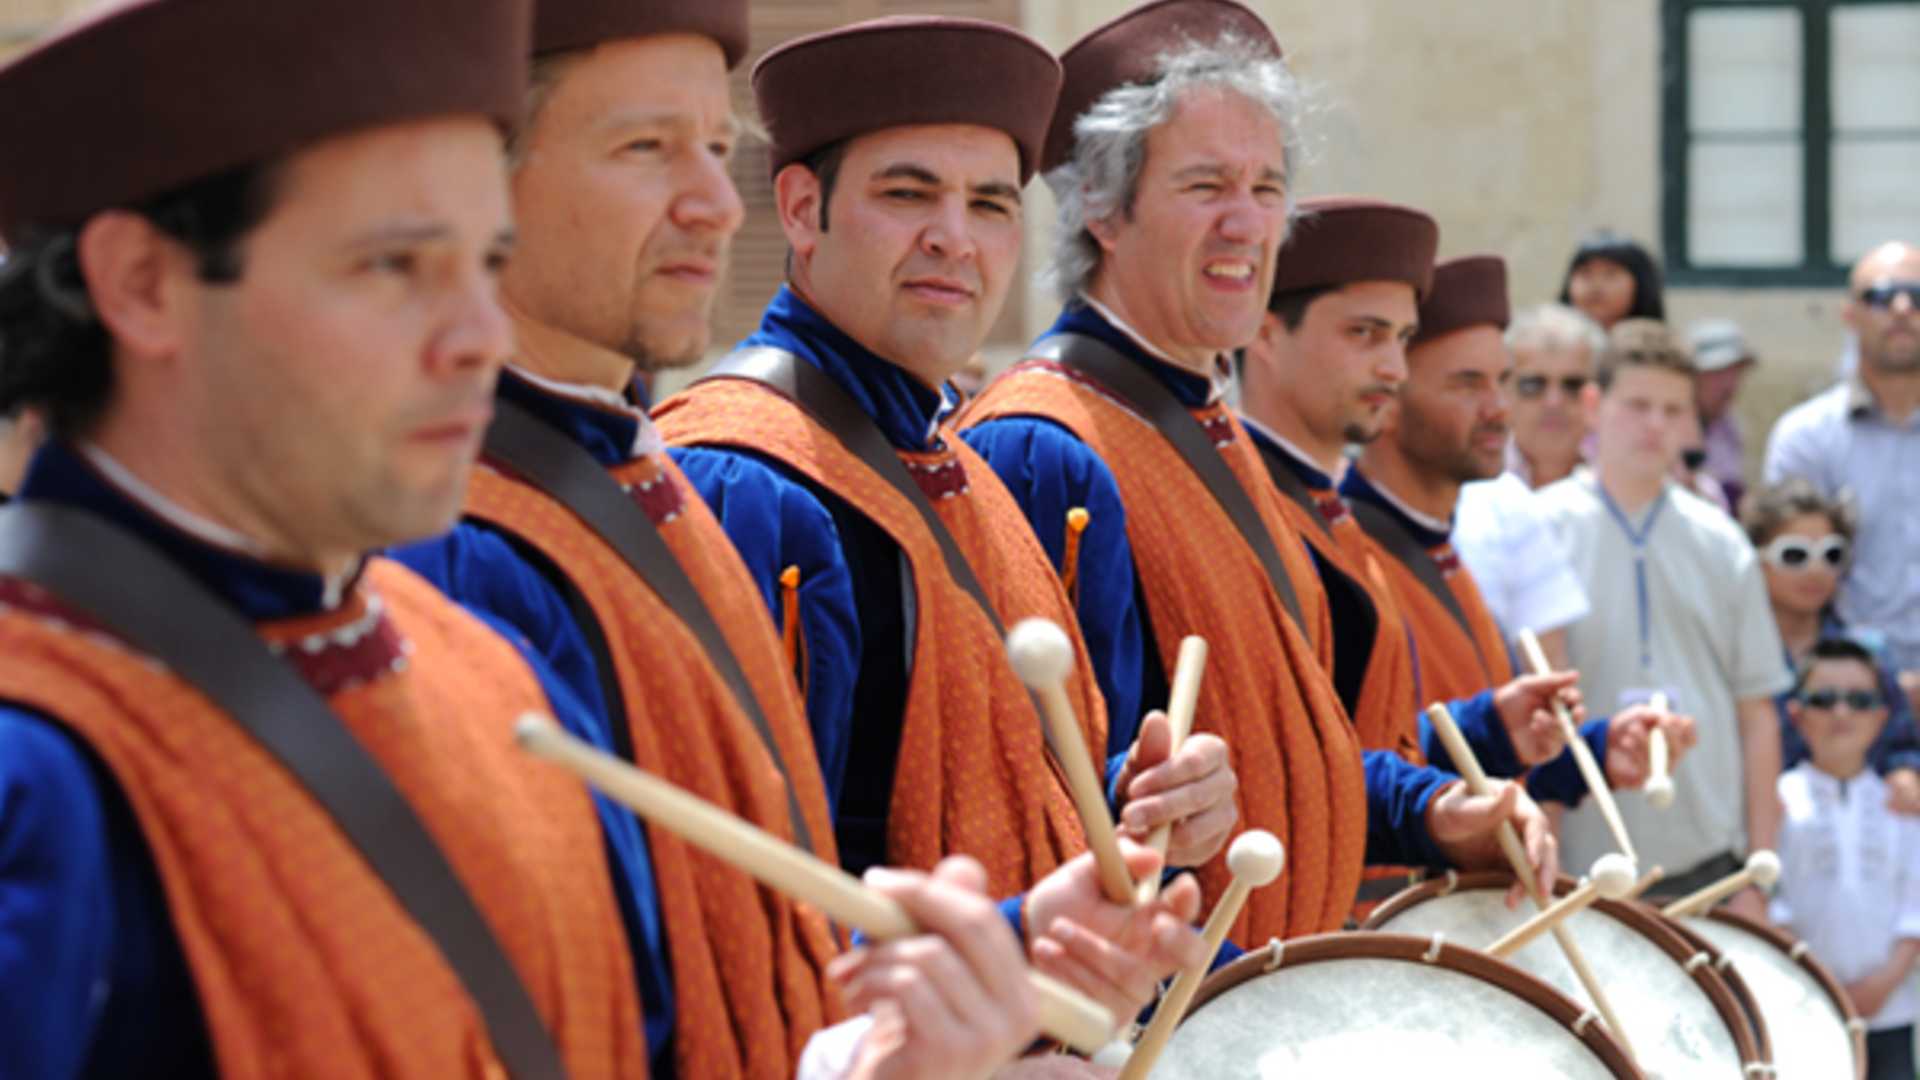 The Medieval Mdina Festival